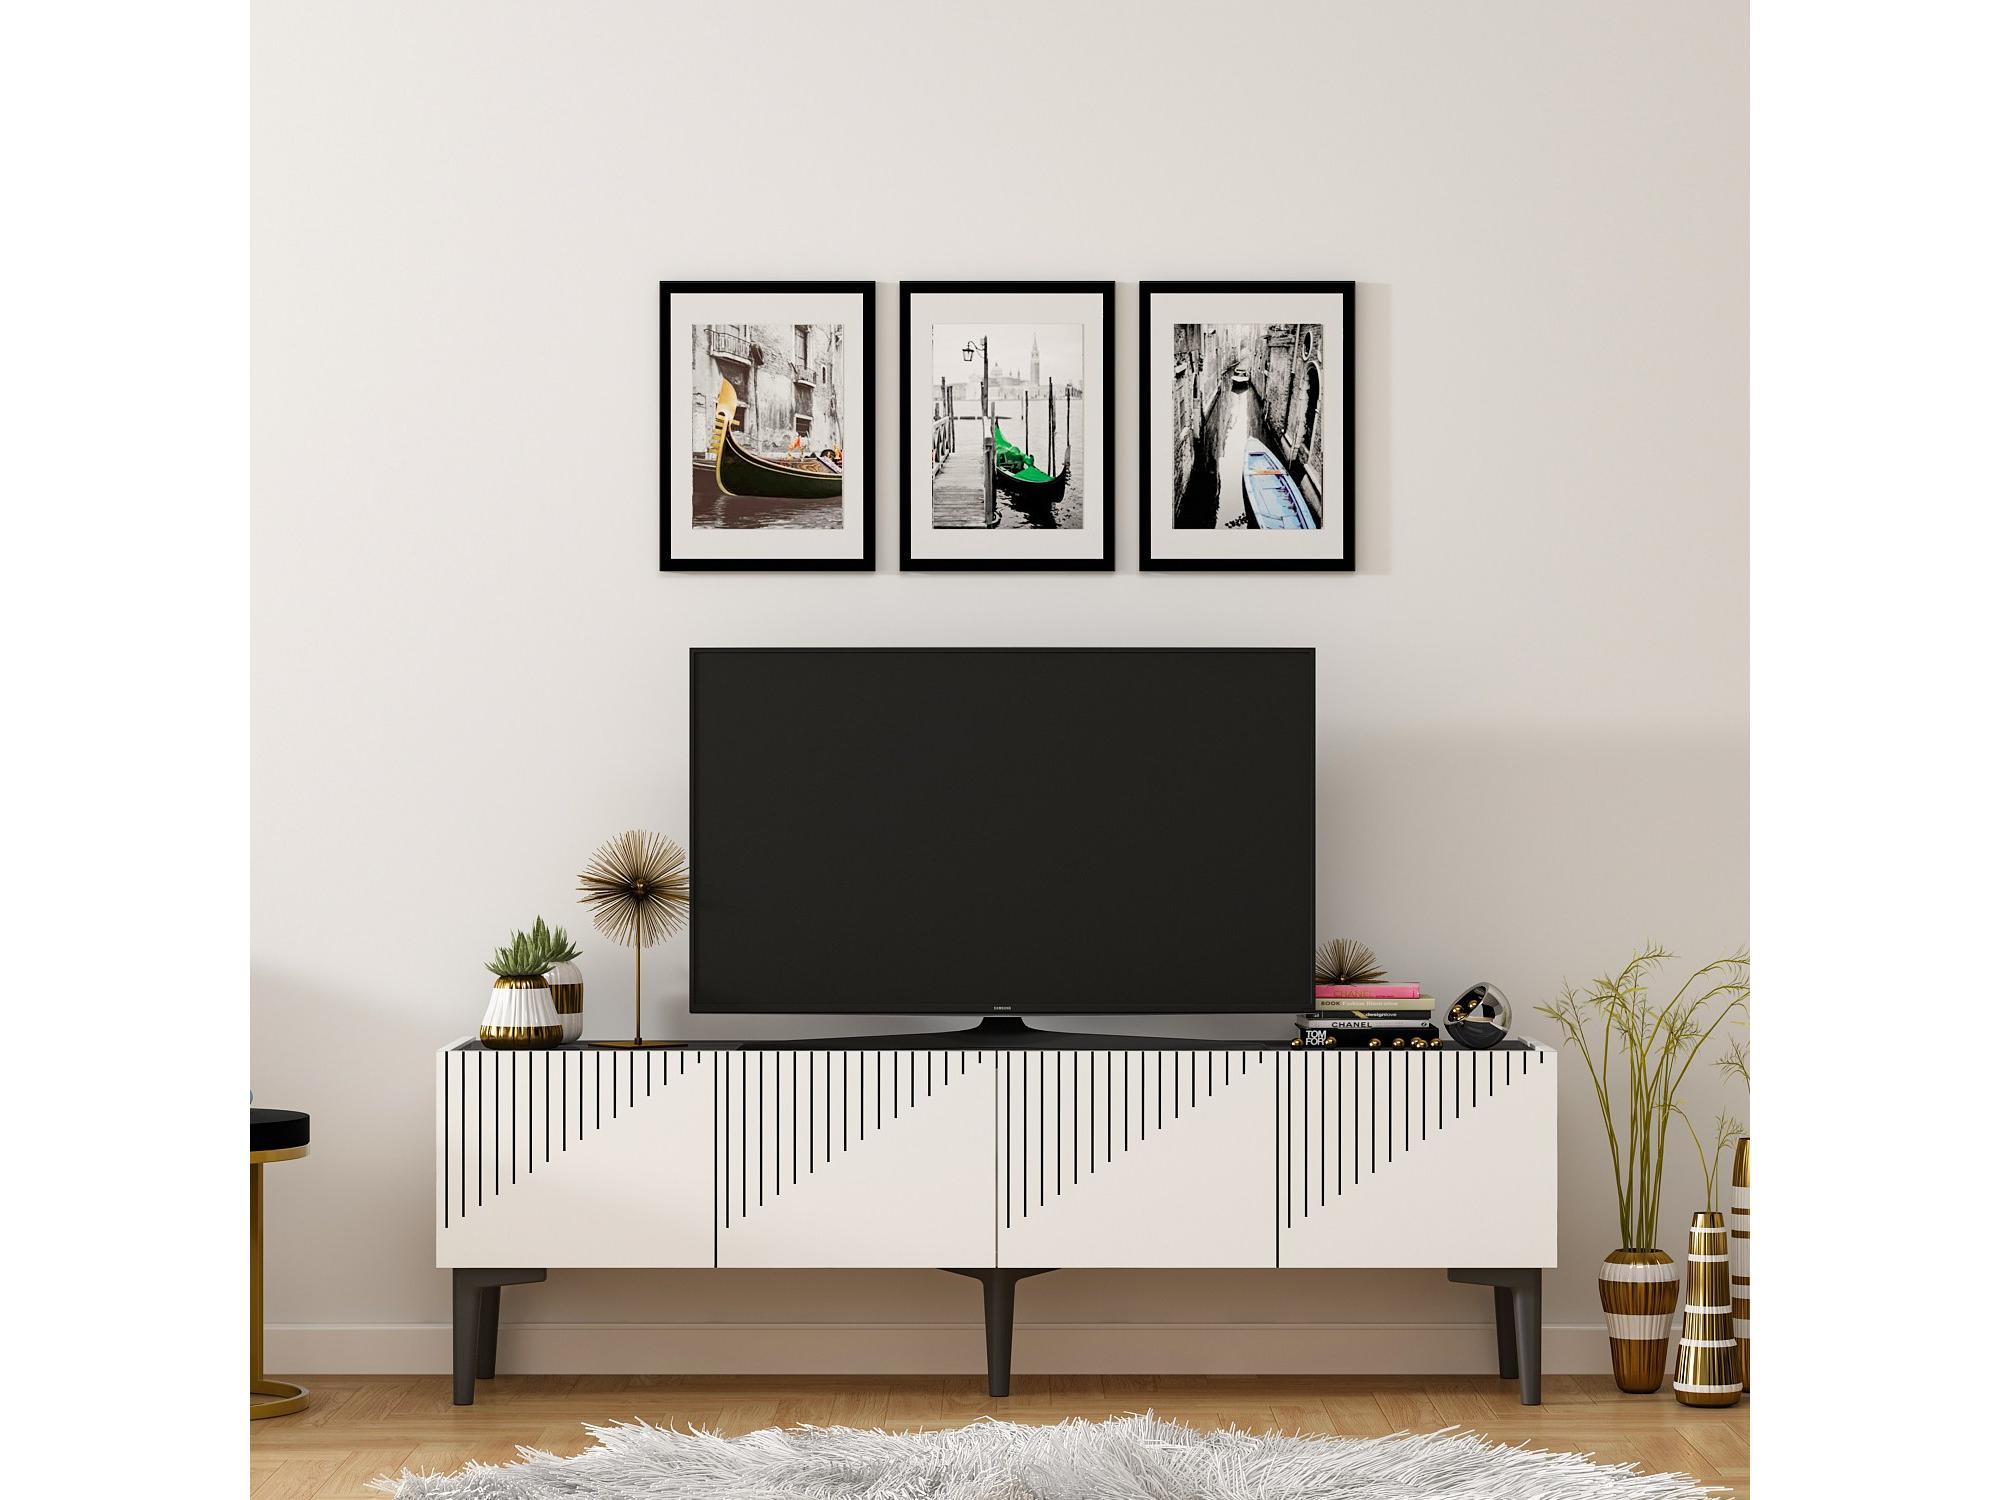  TV stolek/skříňka Tomune 4 (bílá + černá)